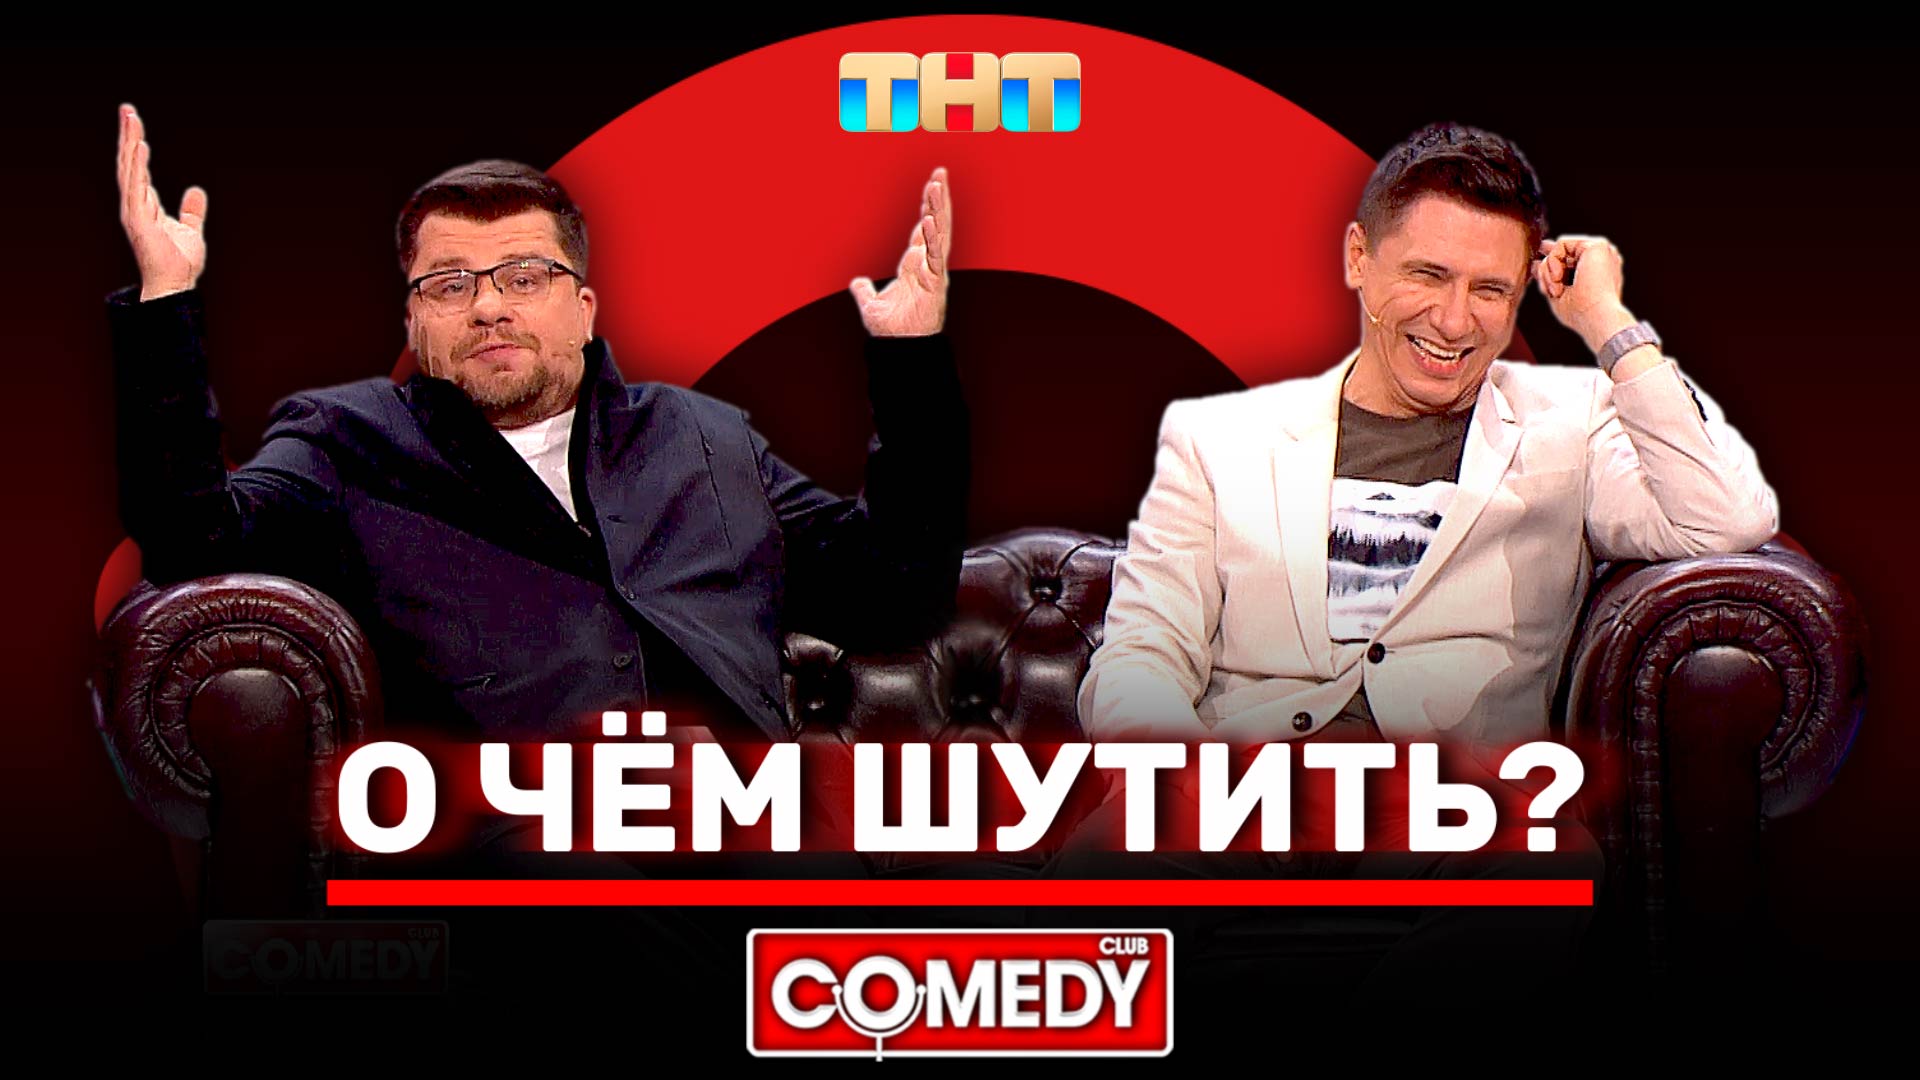 Comedy Club Гарик Харламов